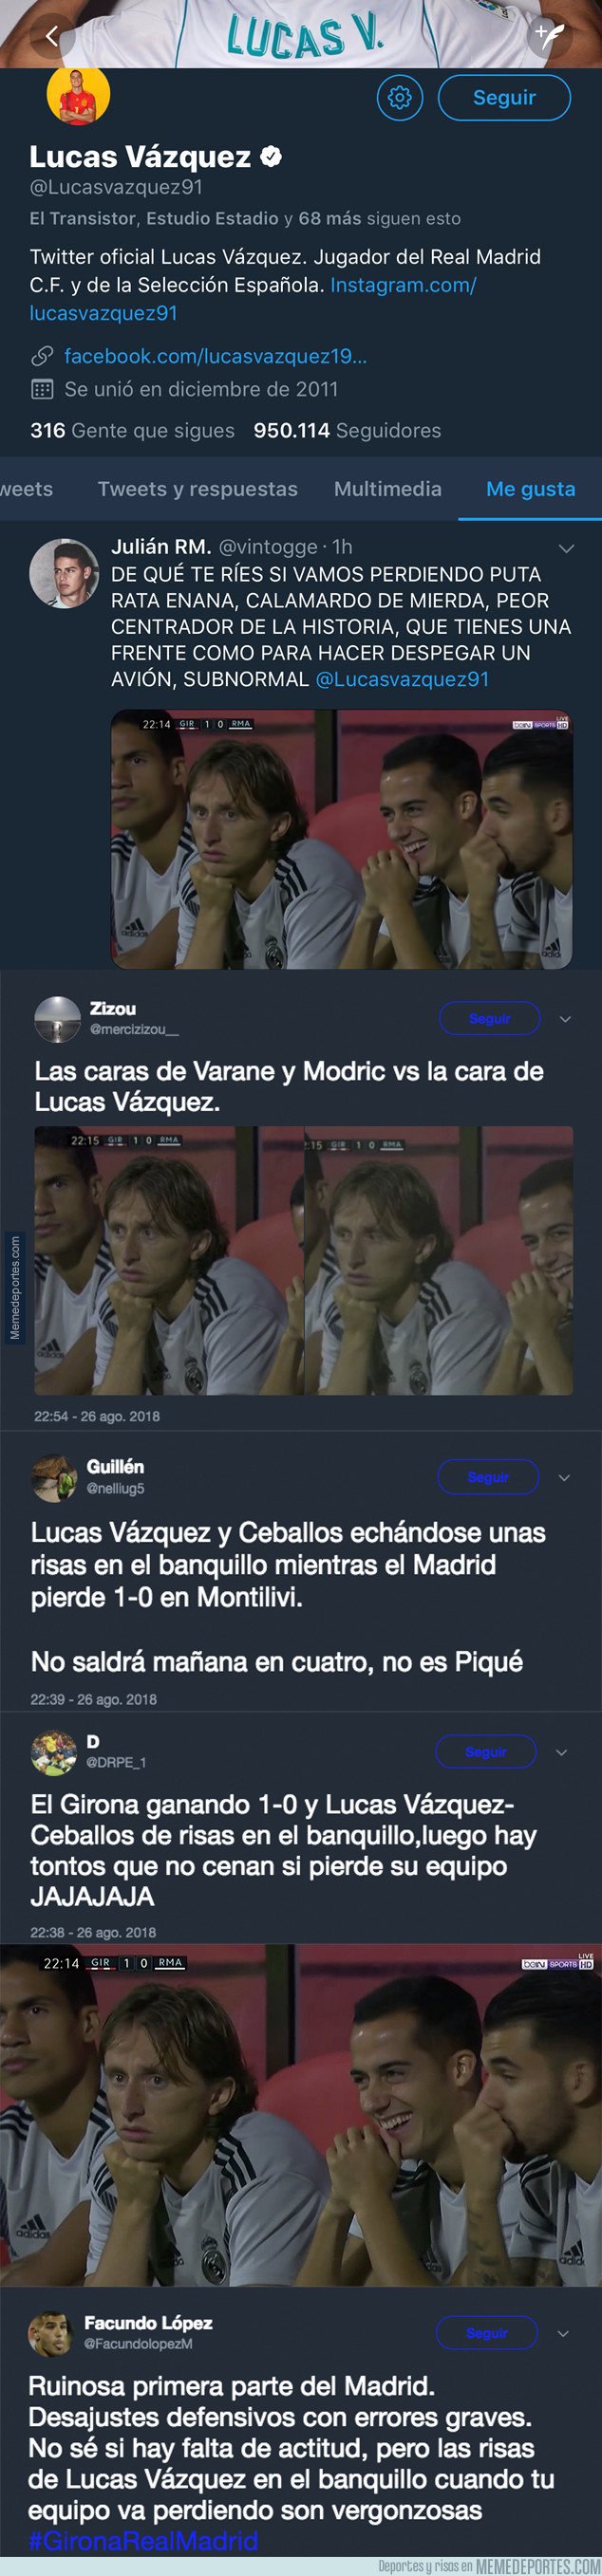 1048726 - Enfado en el madridismo por lo que hacía Lucas Vázquez en el banquillo mientras perdía su equipo